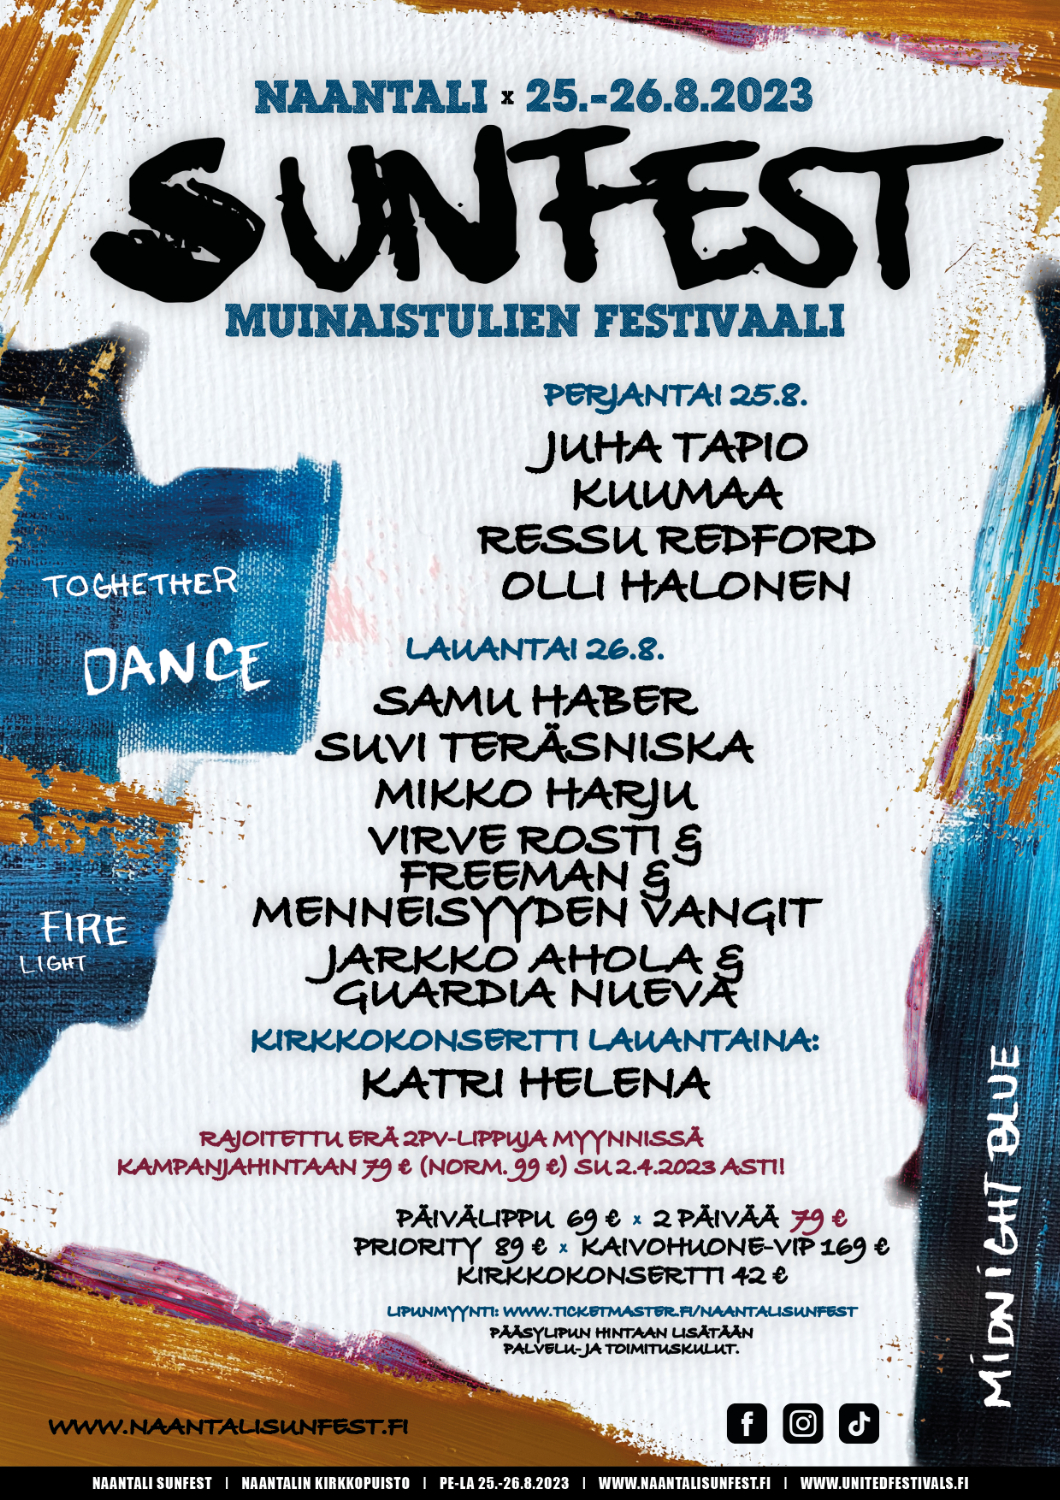 Naantali Sunfest järjestetään Muinaistulien viikonloppuna - tarjolla huippuesiintyjien lisäksi upeaa tuli- ja valoshowta!